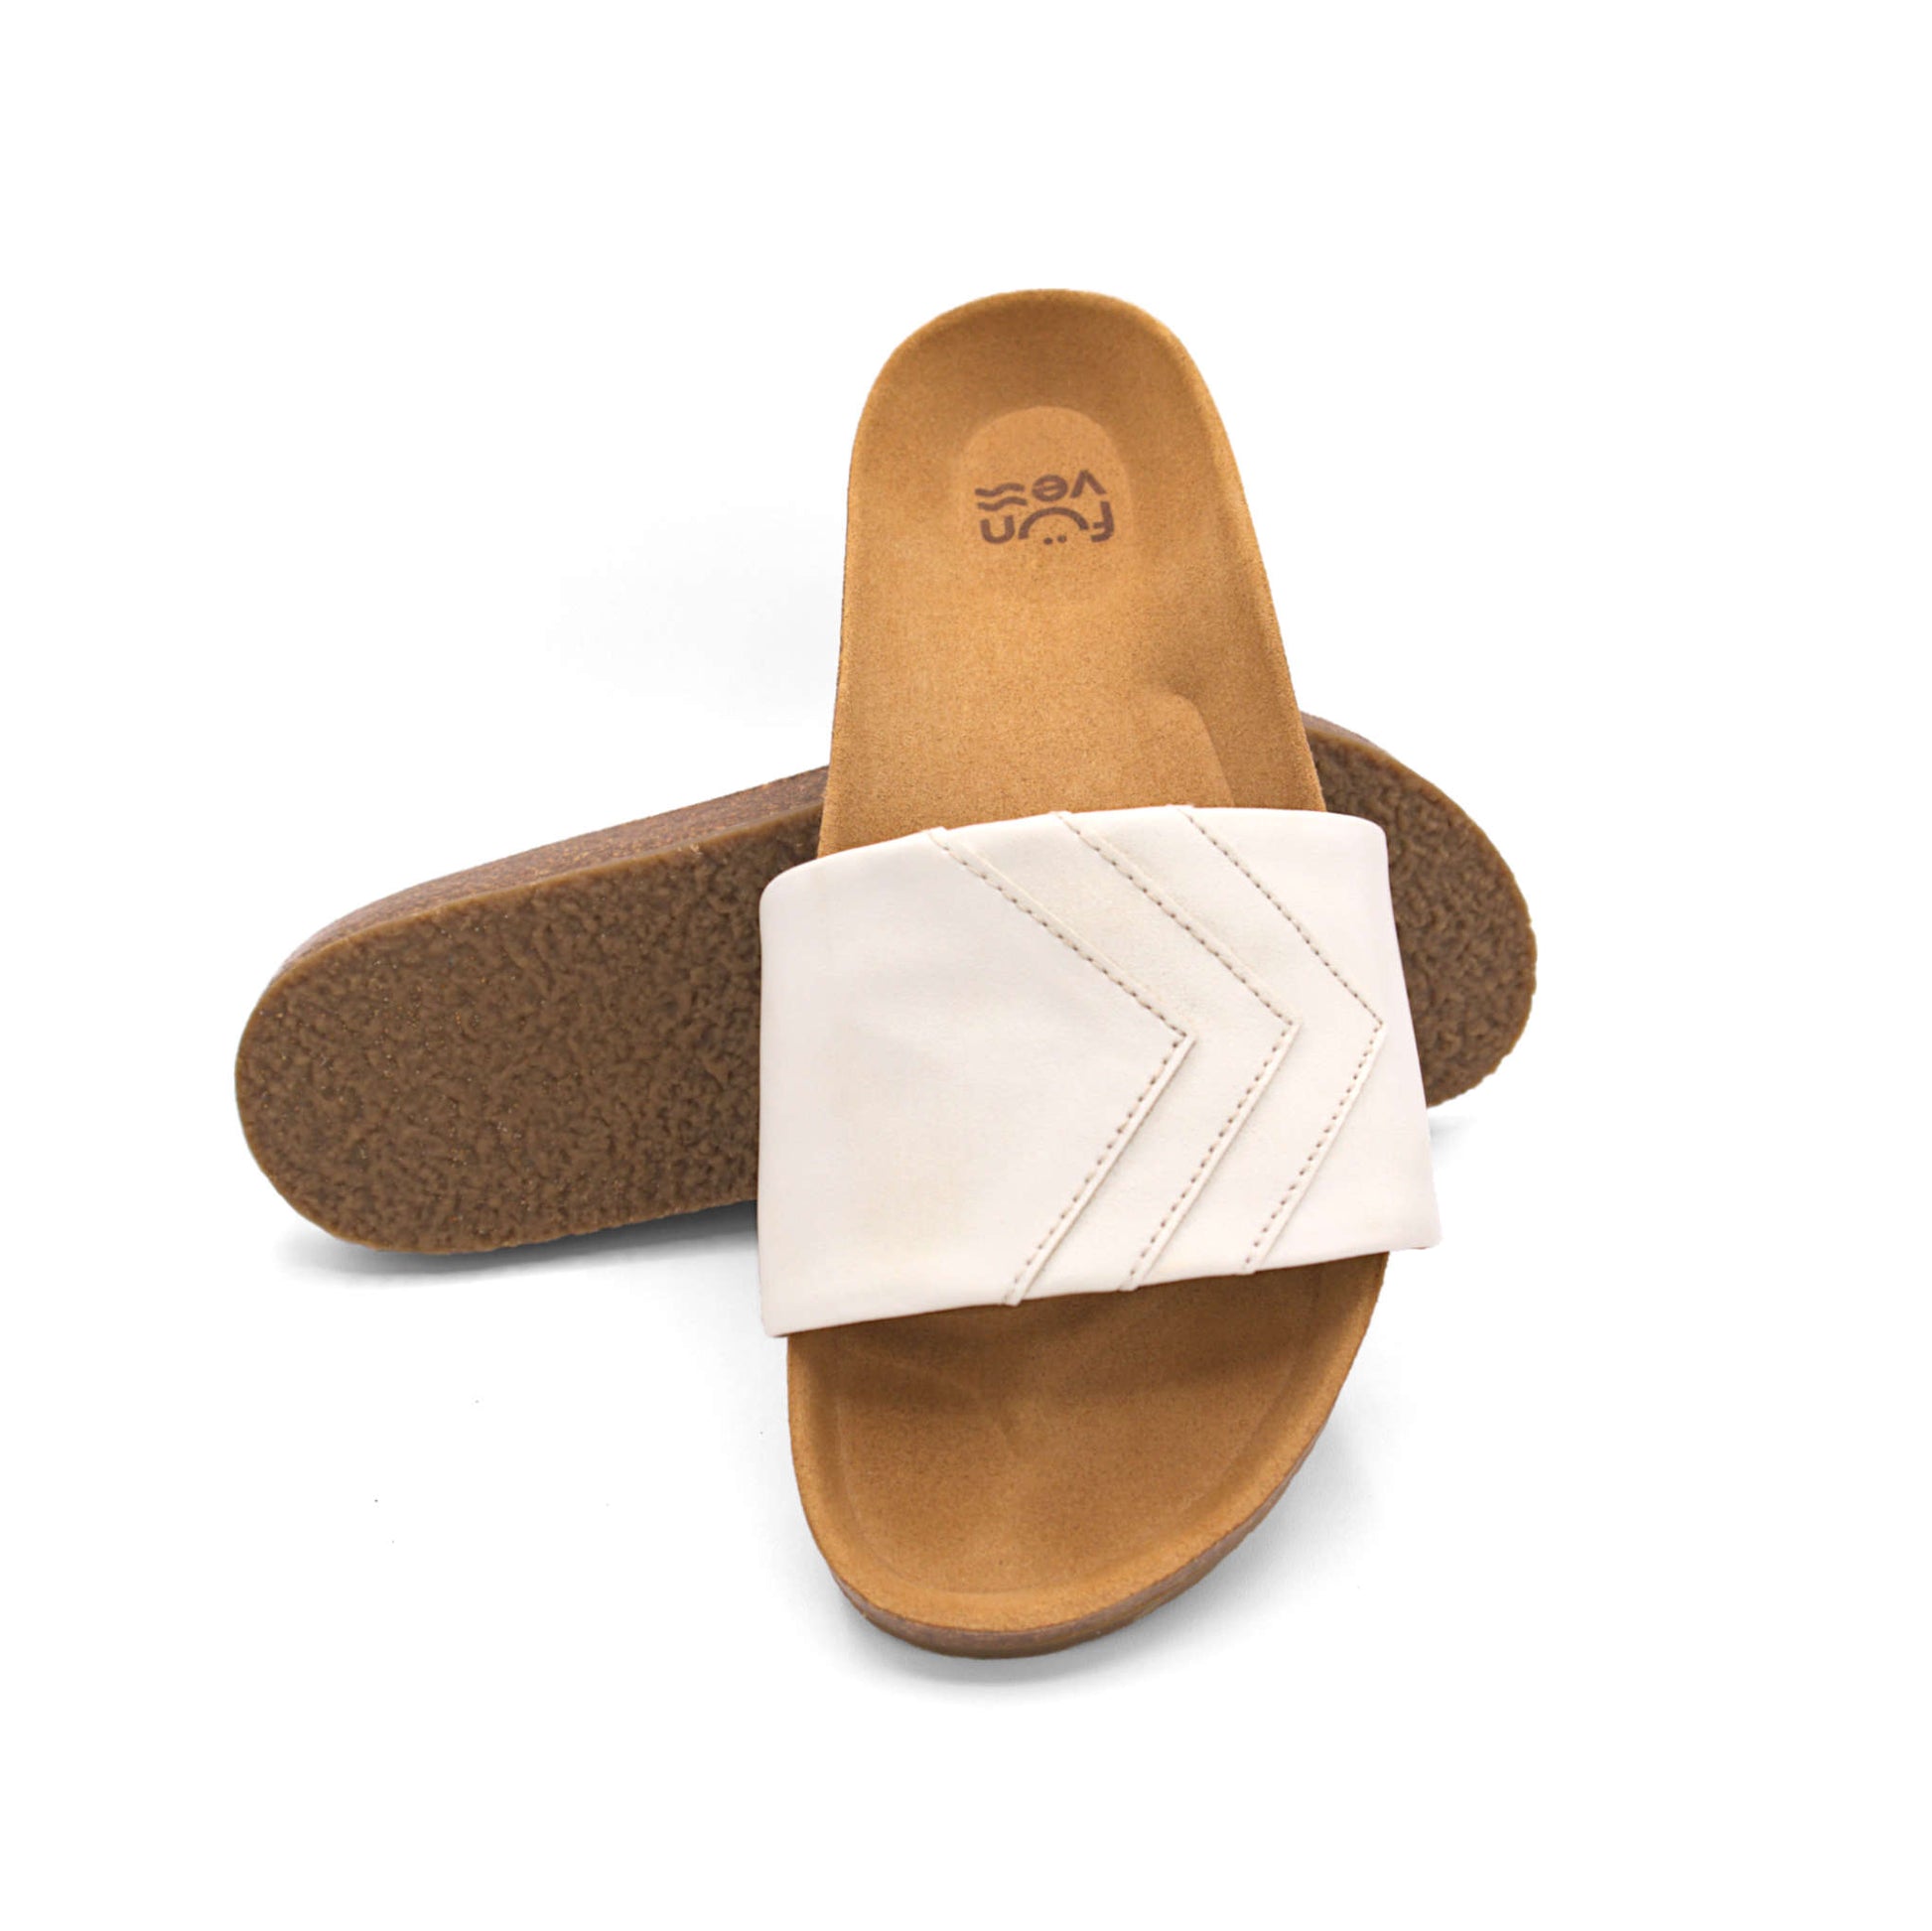 Weiße Sandalen; vegan mit Fußbett; monochrom einfarbig; Marke Fünve; Modell Yang; gestapelt